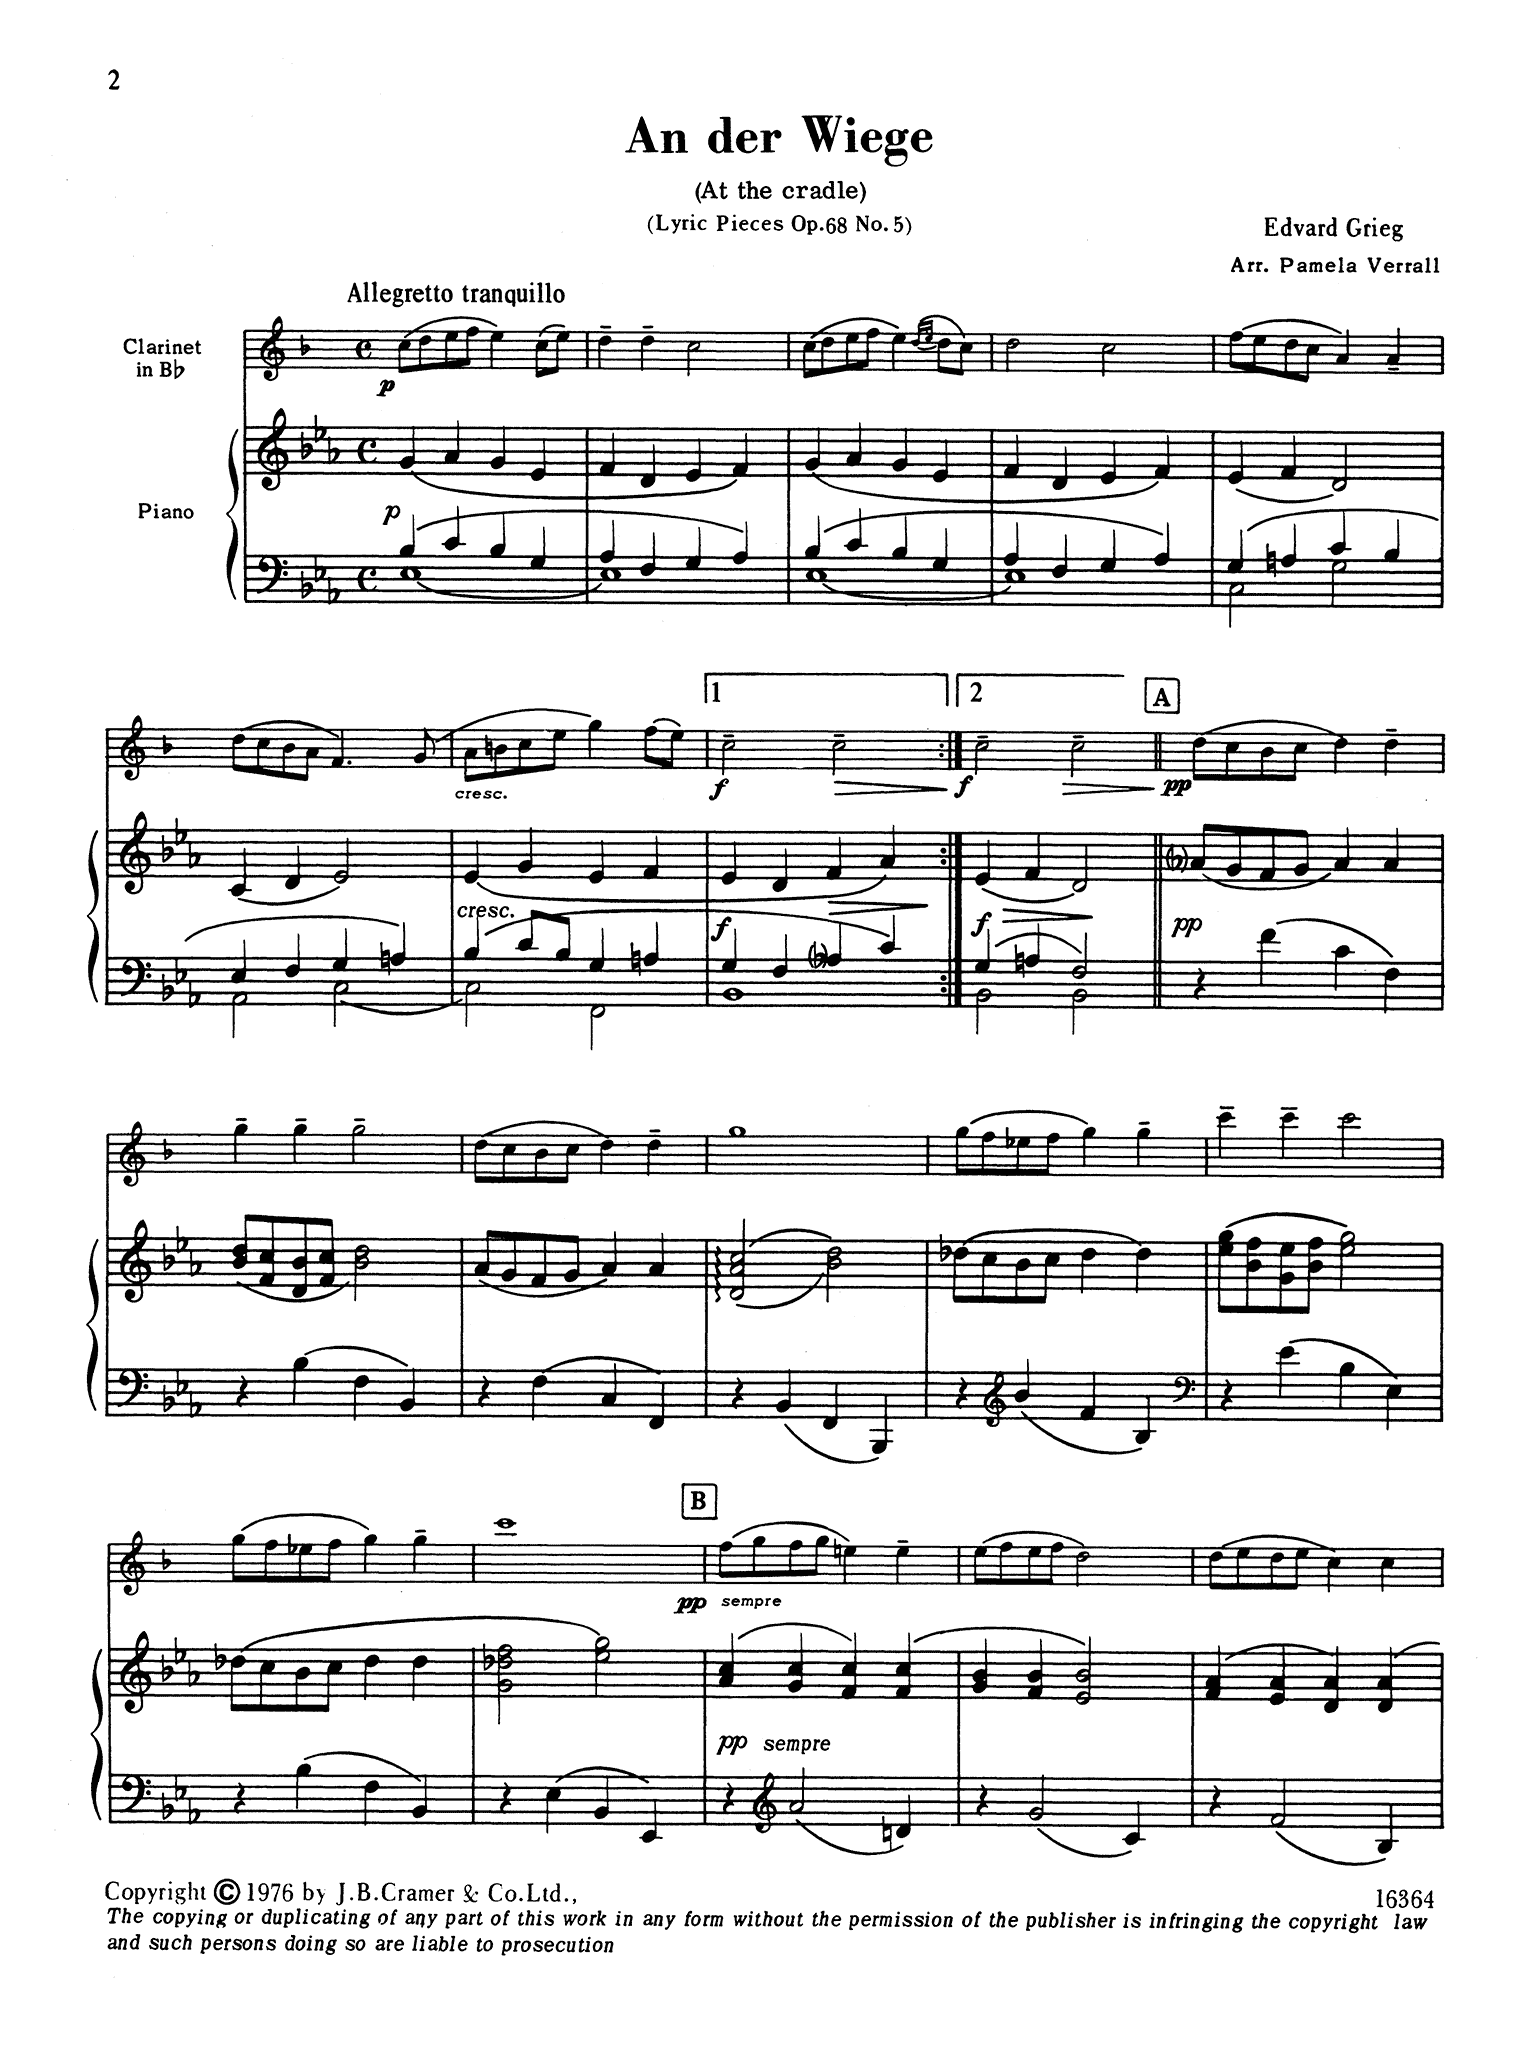 Grieg An der Wiege Op. 68 No. 5 clarinet and piano arrangement